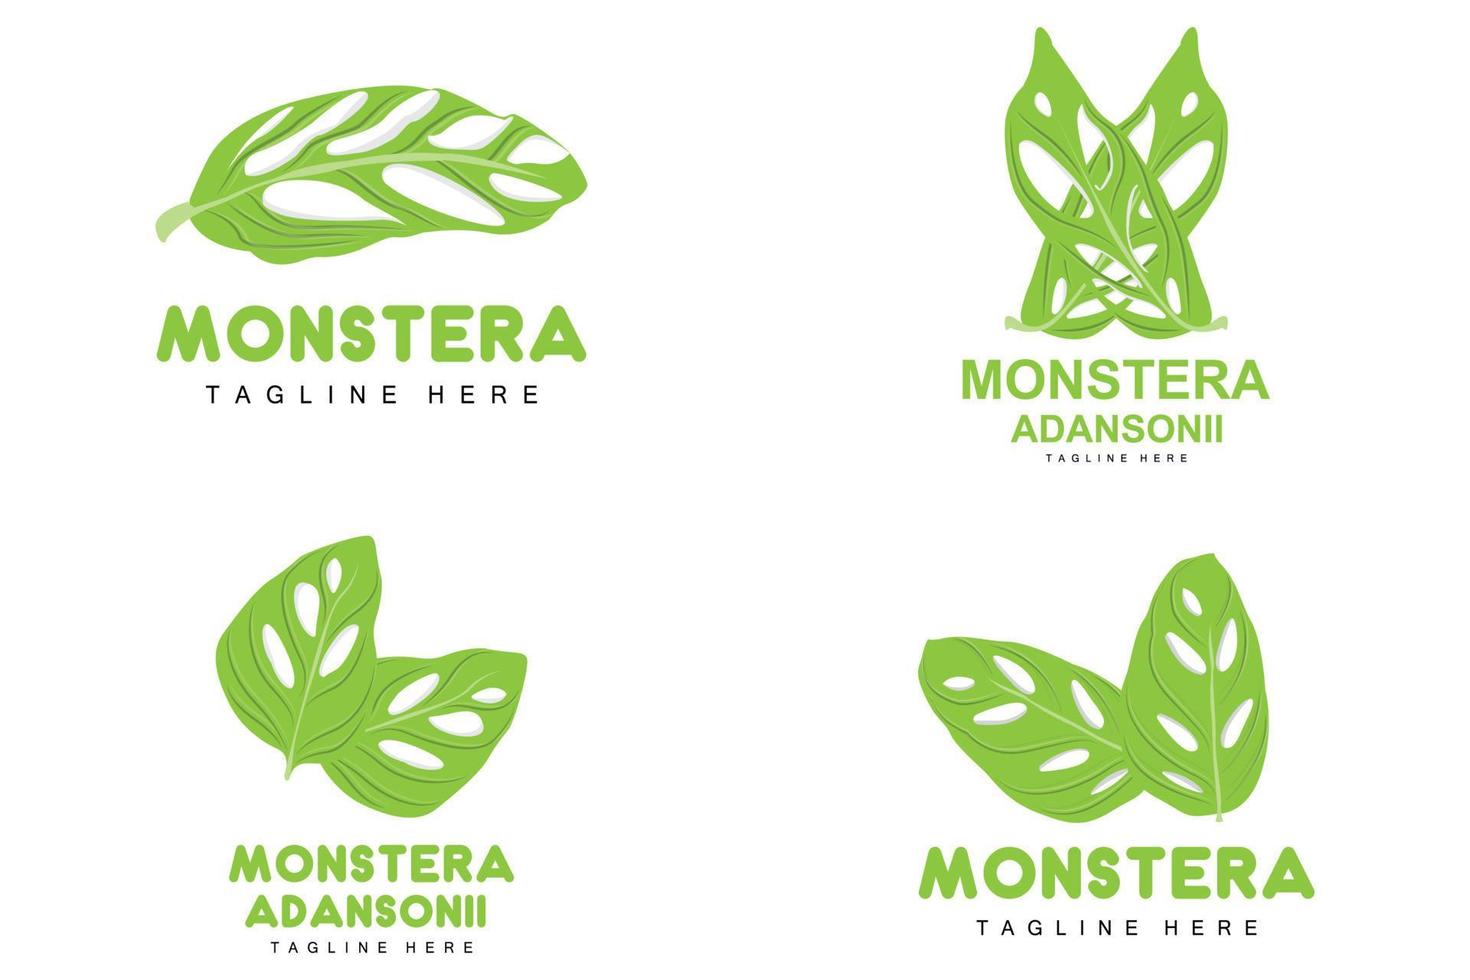 logotipo de hoja de monstera adansonii, vector de planta verde, vector de árbol, ilustración de hoja rara